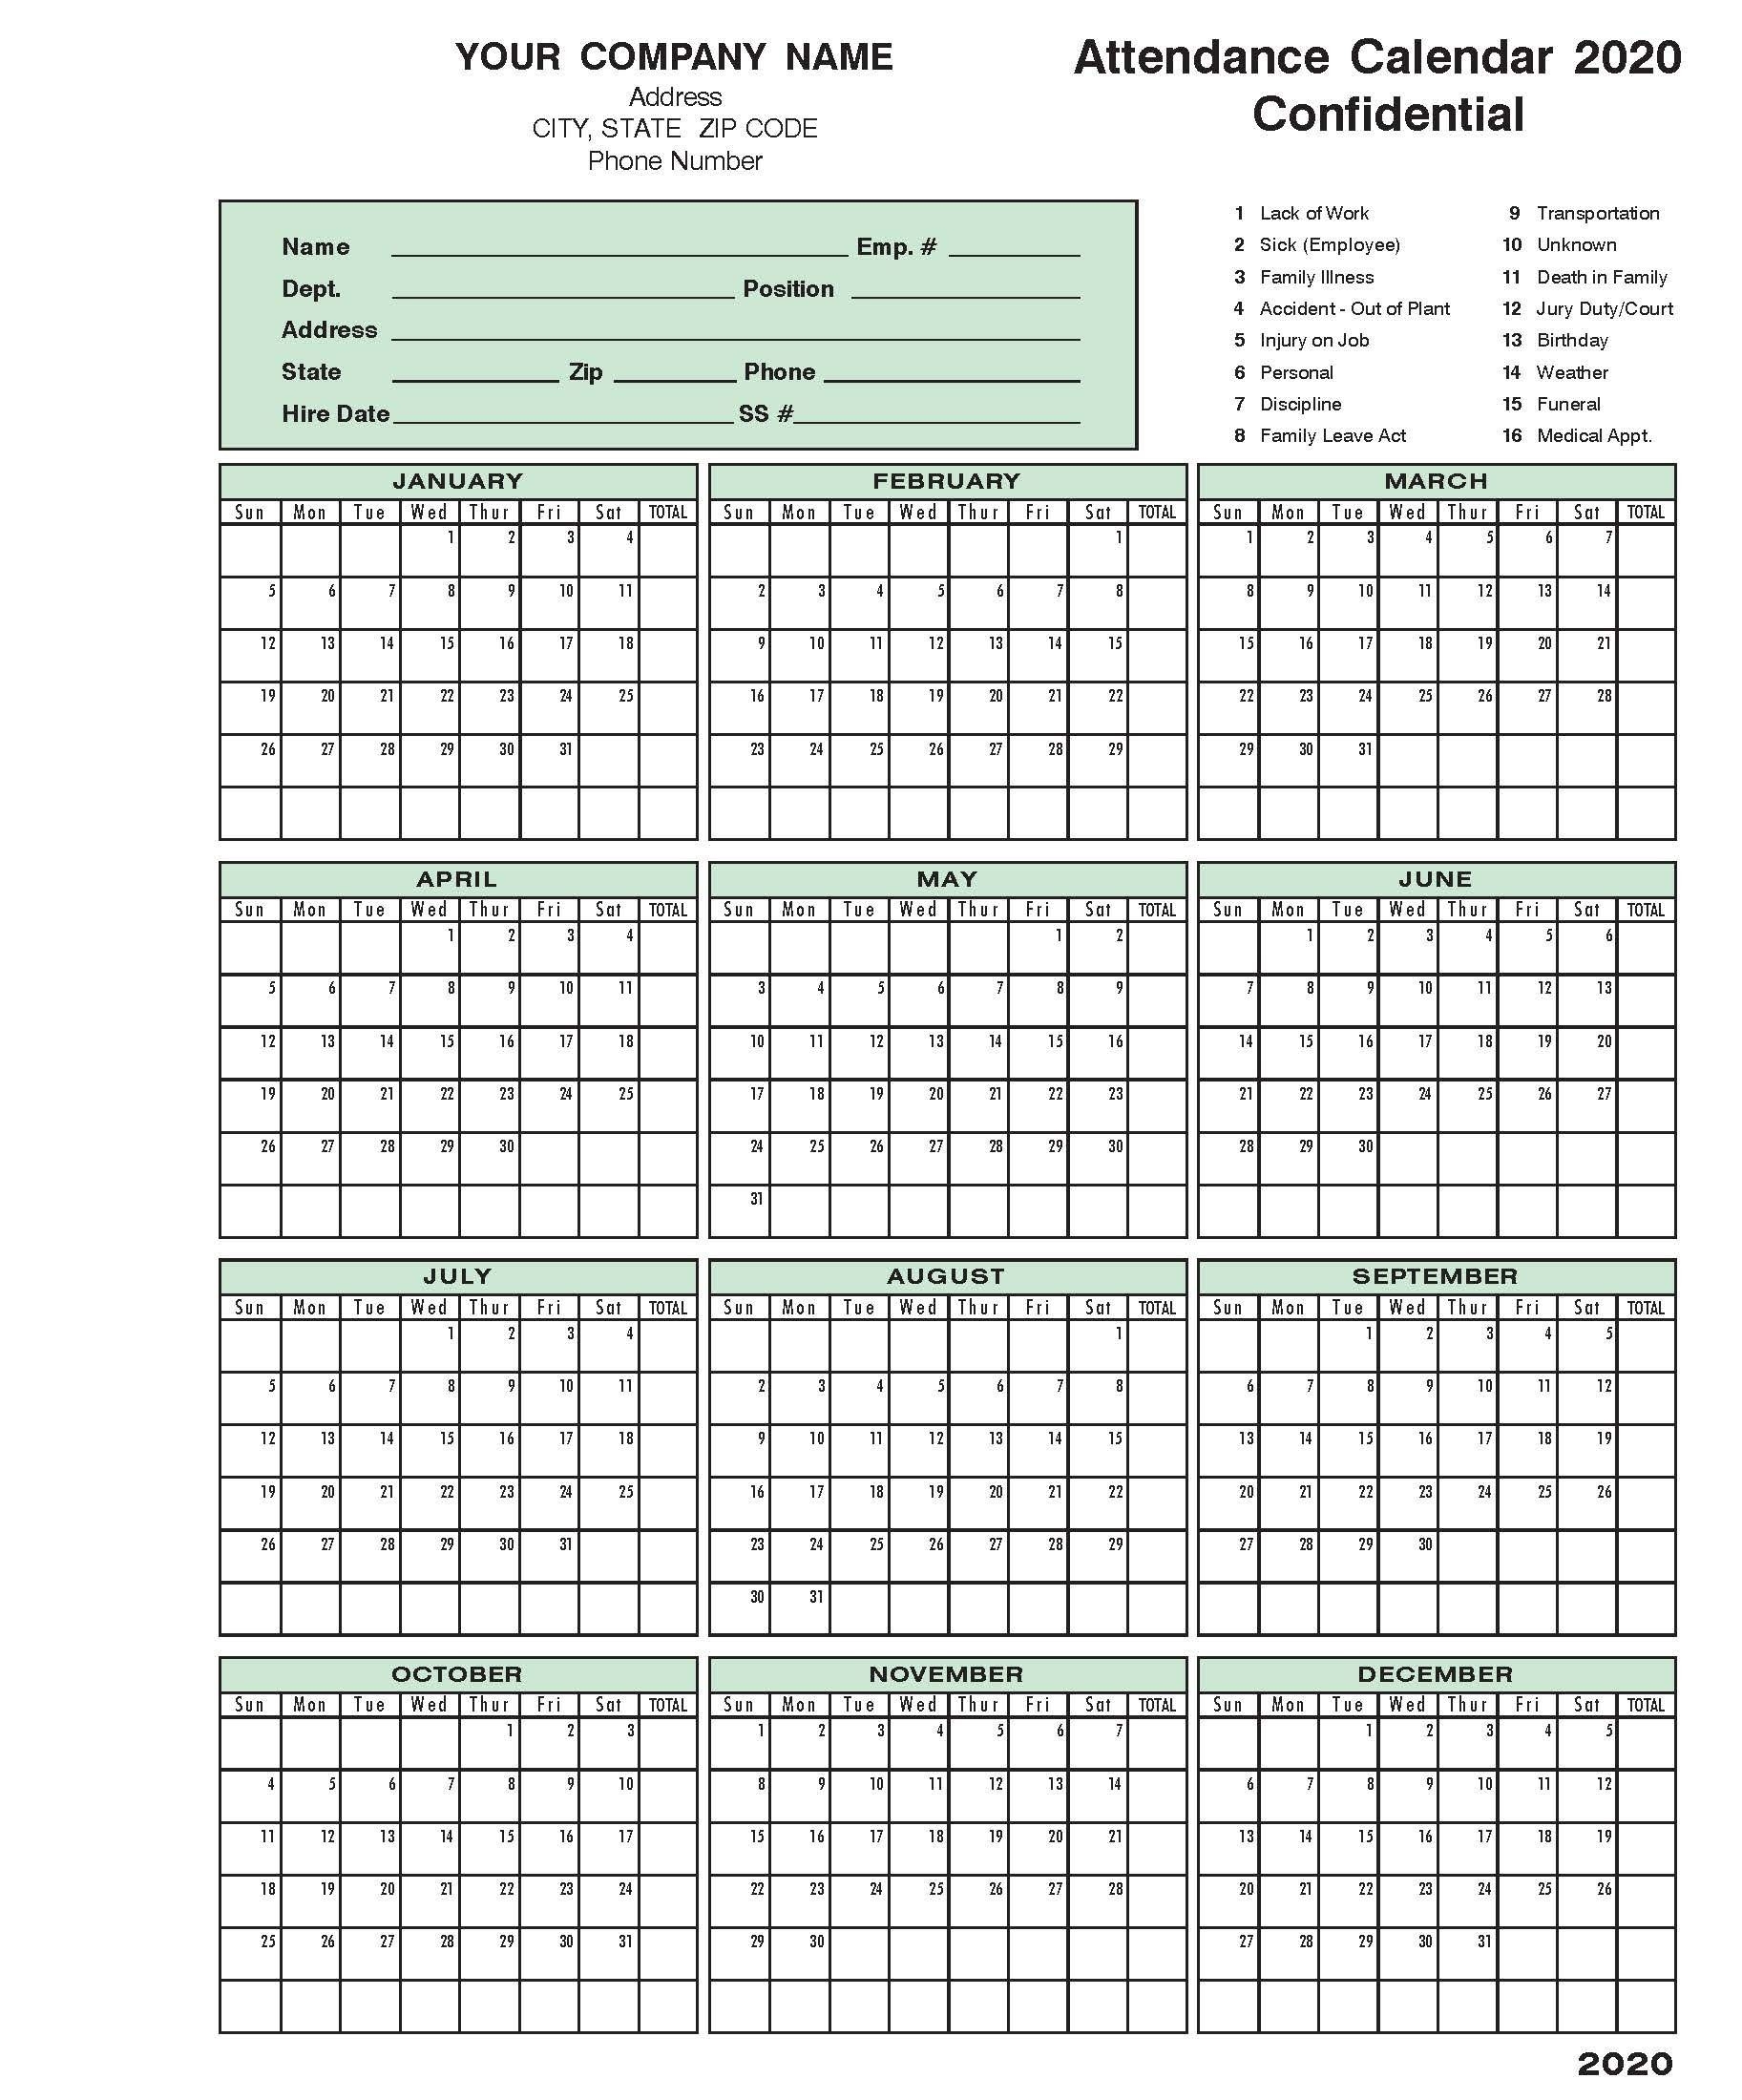 2020 Attendance Calendar | Calendar Template, Calendar 2020-Printable 2021 Atteance Calendar